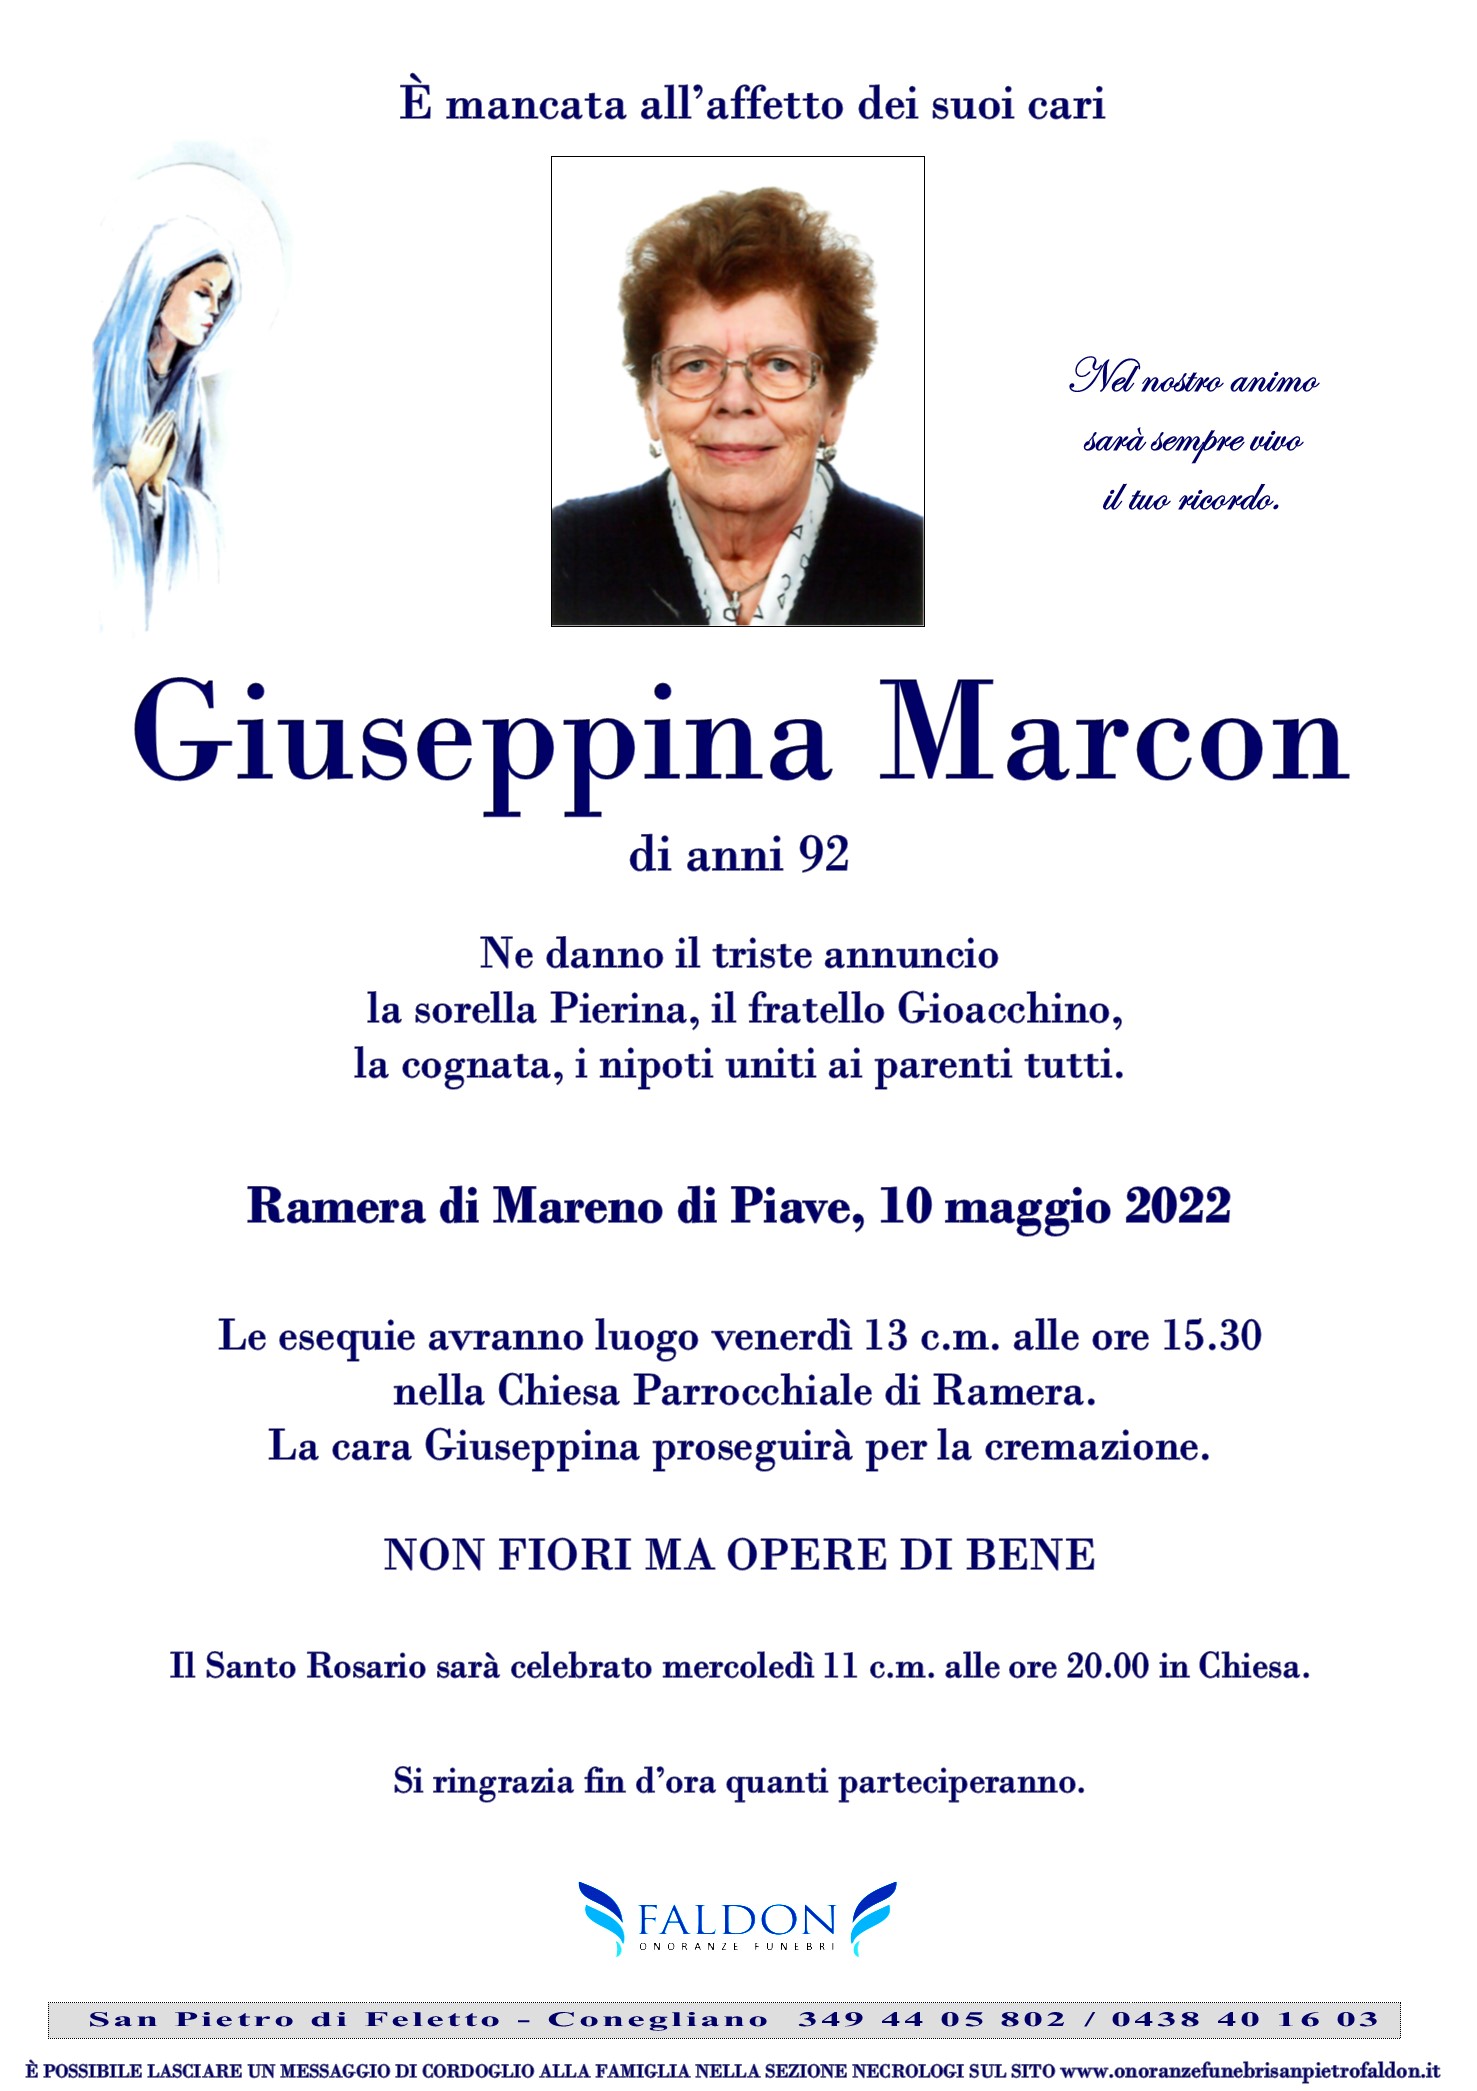 Giuseppina Marcon